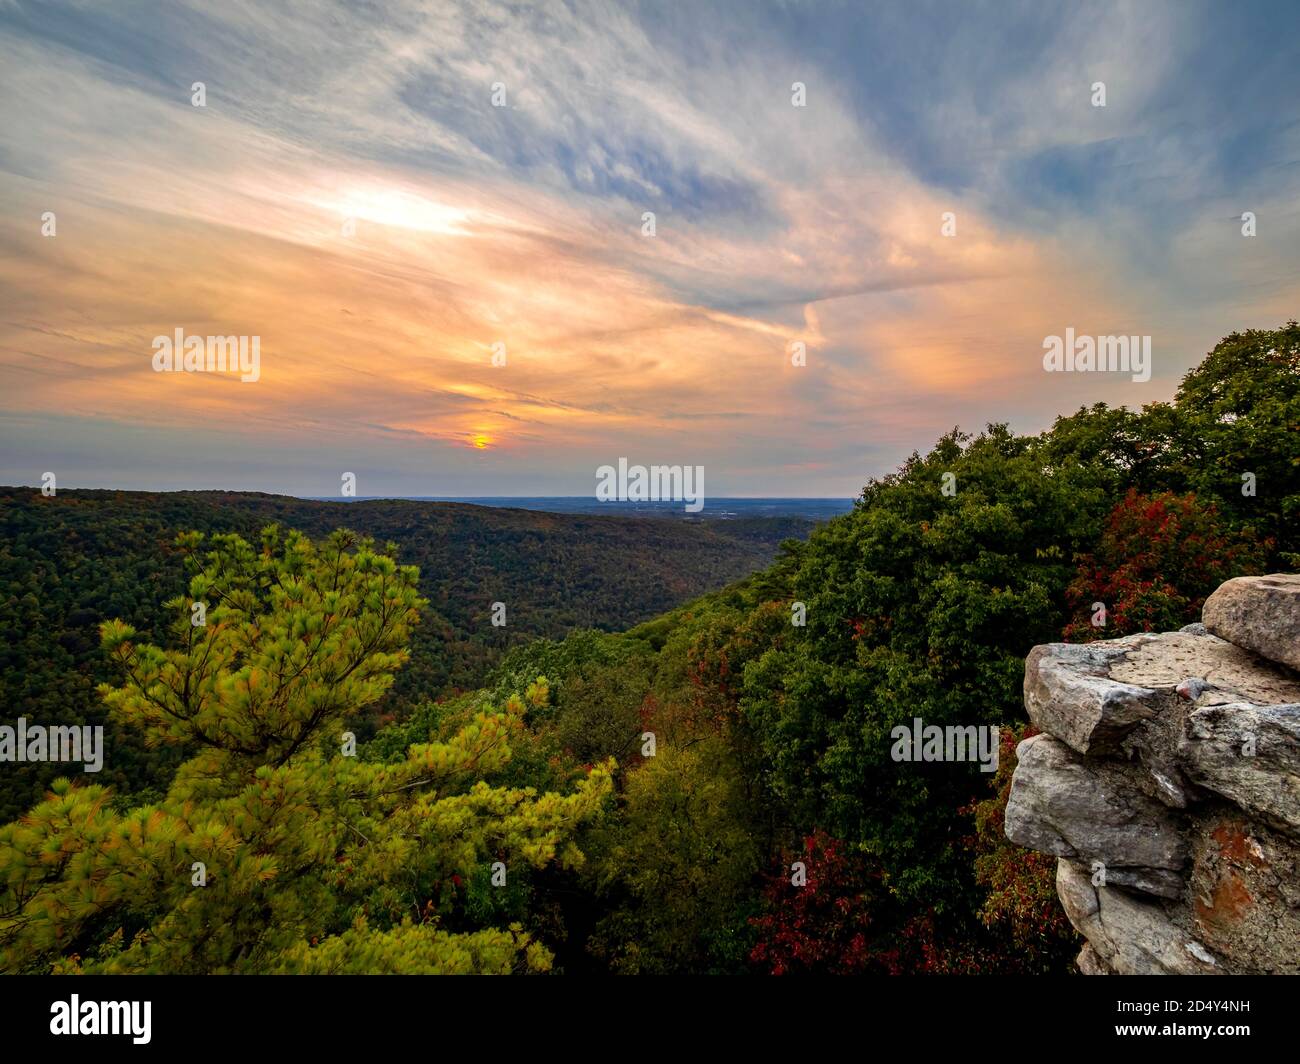 Sonnenuntergang über den Bergen von West Virginia vom Coopers Rock Overlook im Coopers Rock State Forest. Ein blauer und orangefarbener Sonnenuntergang Himmel über Herbstlaub tr Stockfoto